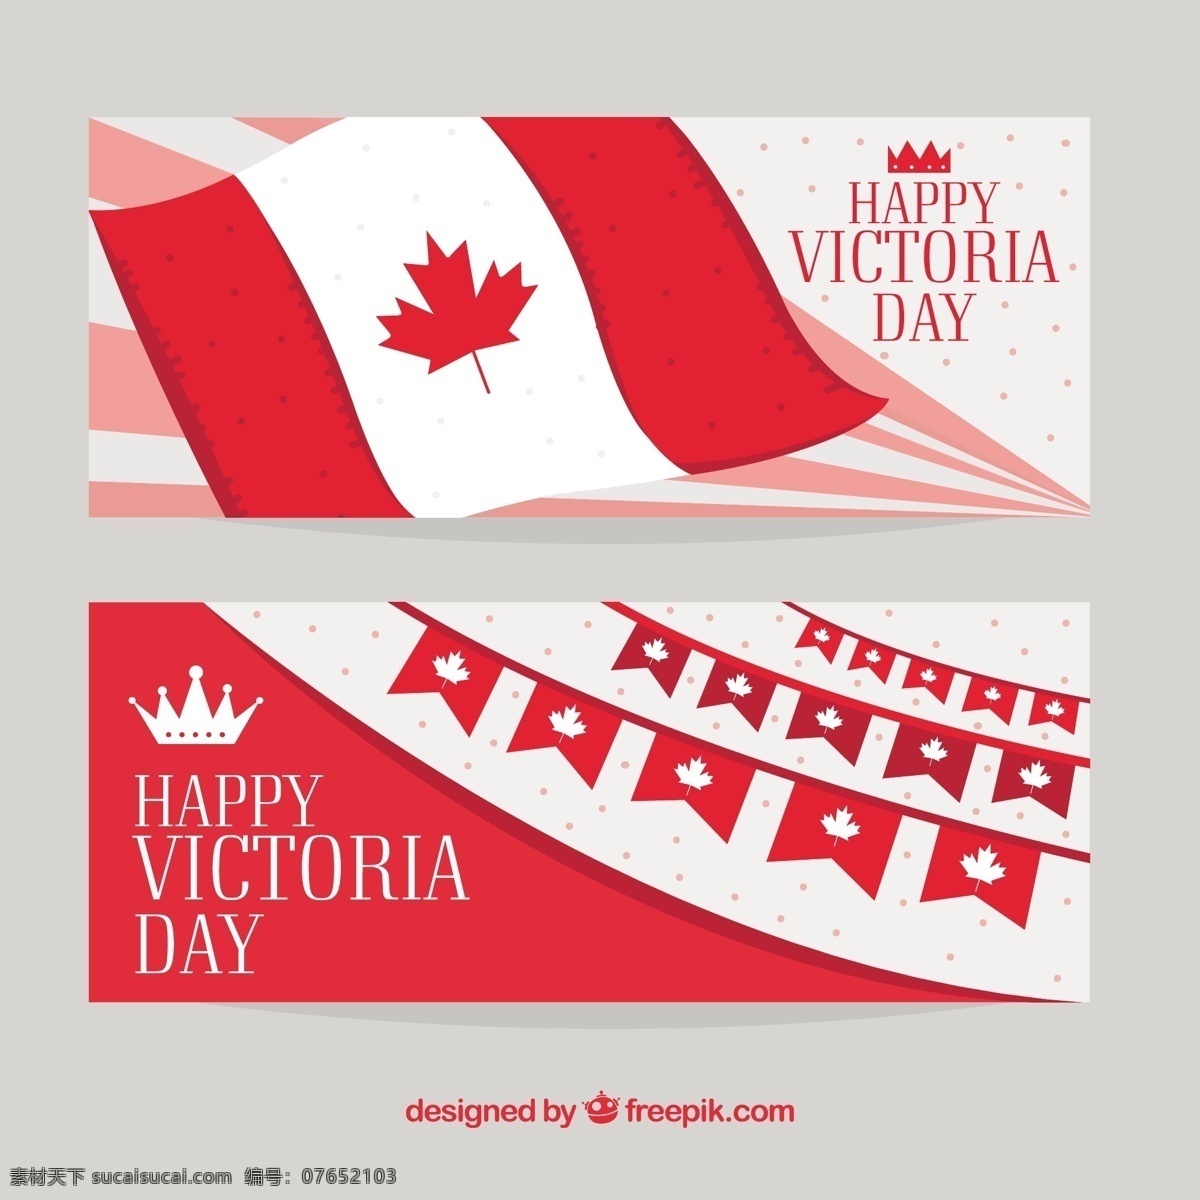 维多利亚 日 横幅 旗帜 生日 女王 加拿大 焰火 假日 星期一 游行